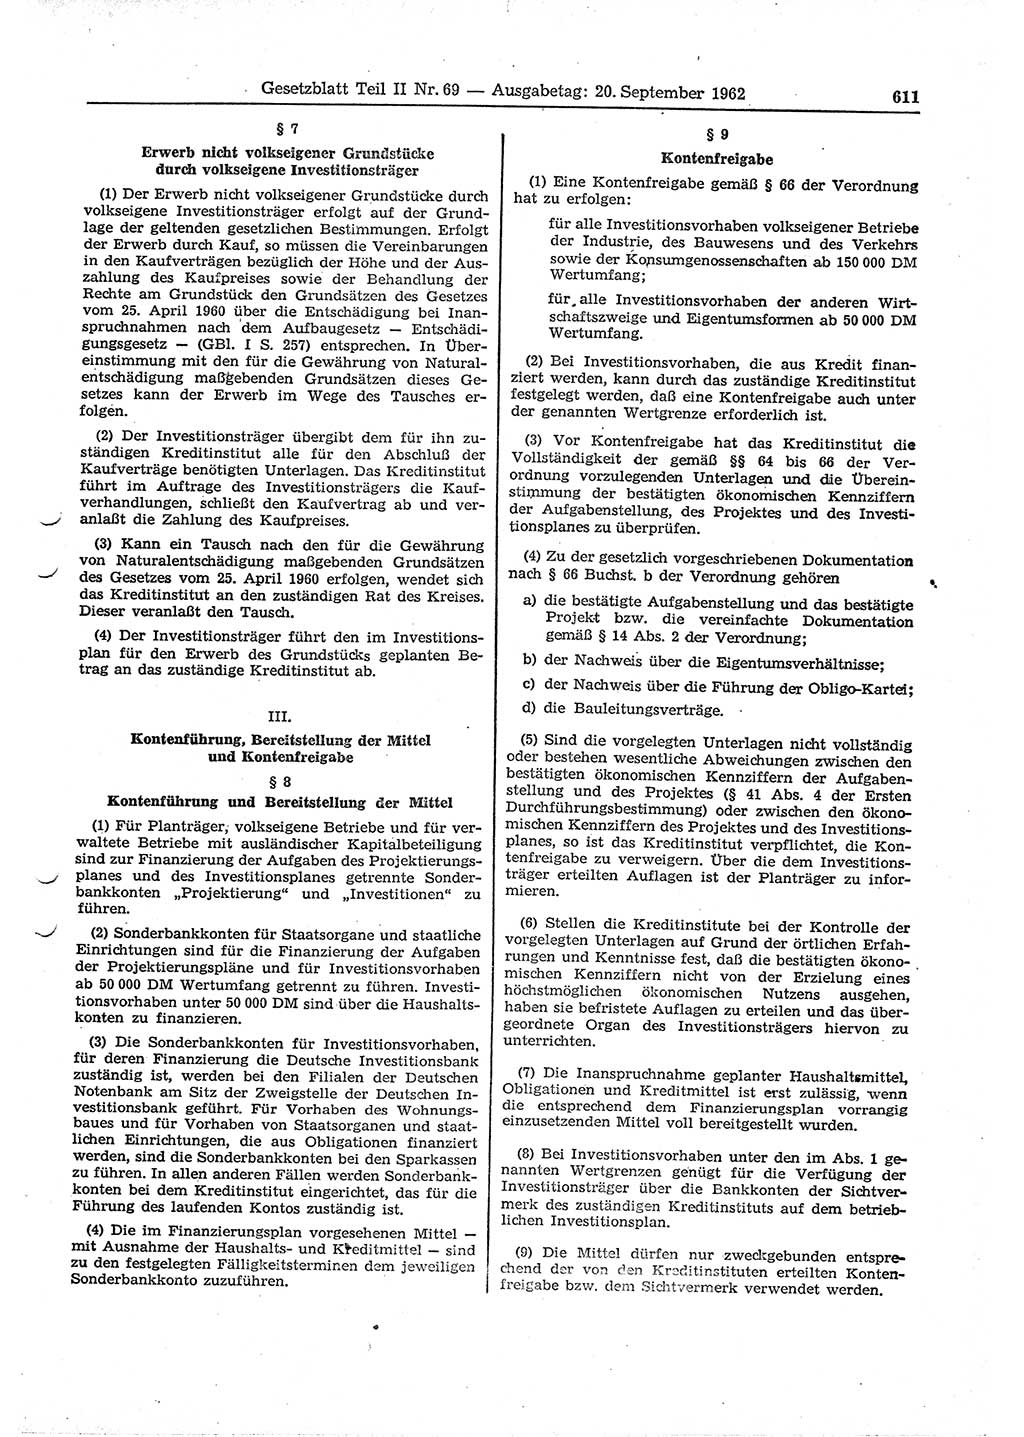 Gesetzblatt (GBl.) der Deutschen Demokratischen Republik (DDR) Teil ⅠⅠ 1962, Seite 611 (GBl. DDR ⅠⅠ 1962, S. 611)